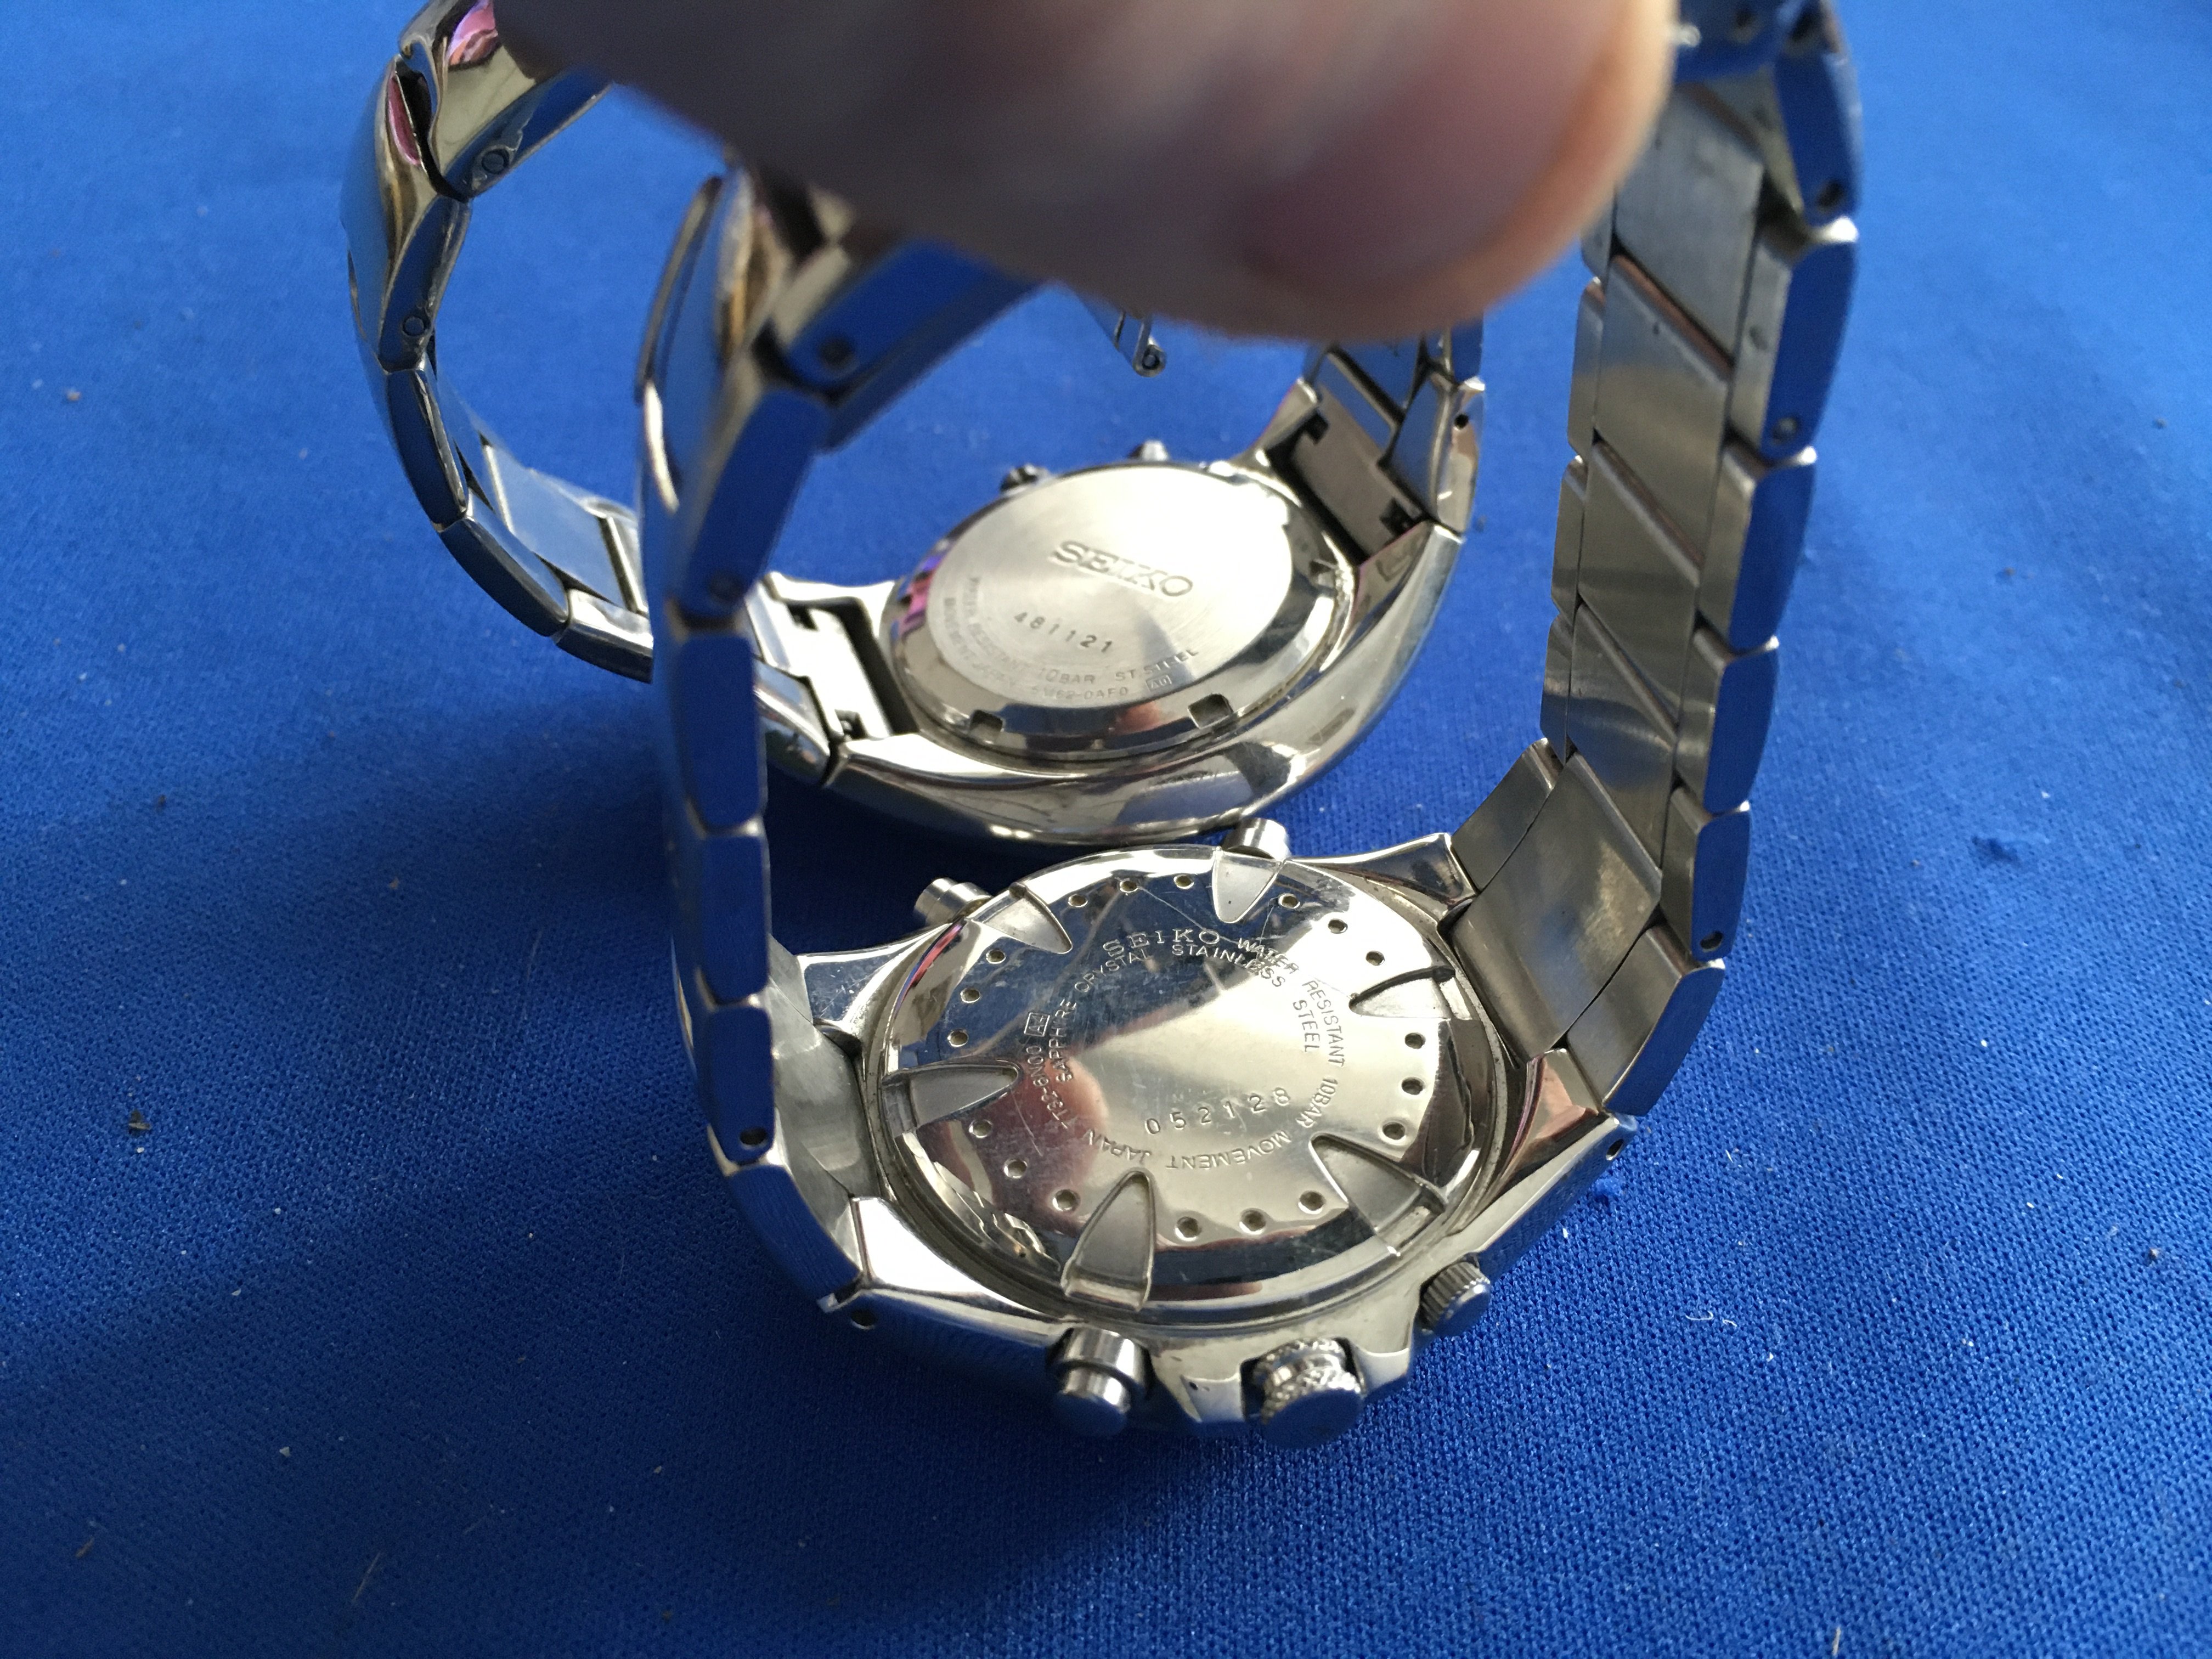 2 gents Seiko wristwatches. 1 Seiko Chronograph quartz 052128, 1 Seiko Kinetic indicator 481121. - Image 2 of 2